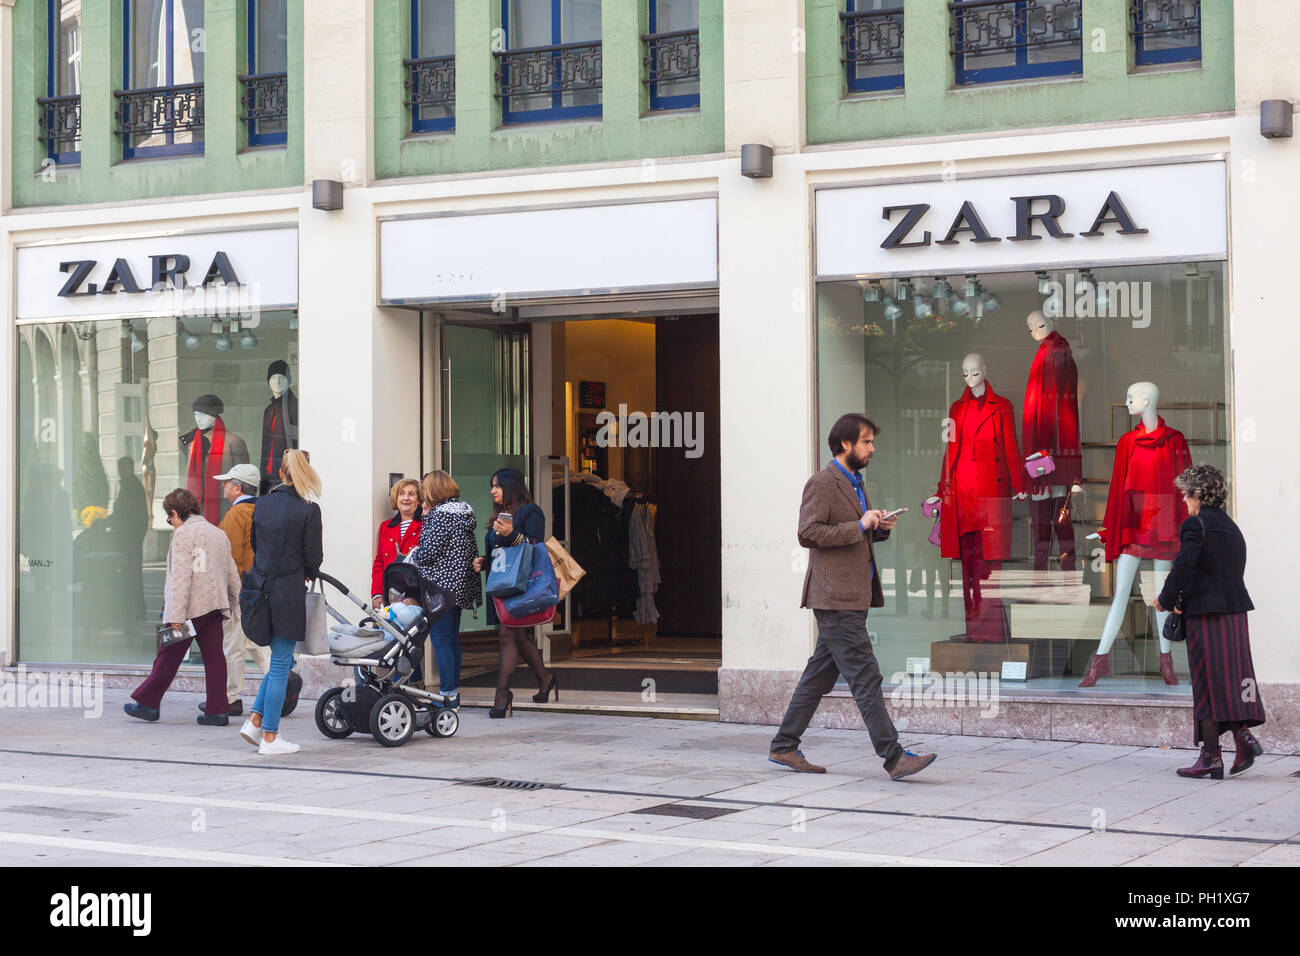 Zara home store fotografías e imágenes de alta resolución - Página 2 - Alamy